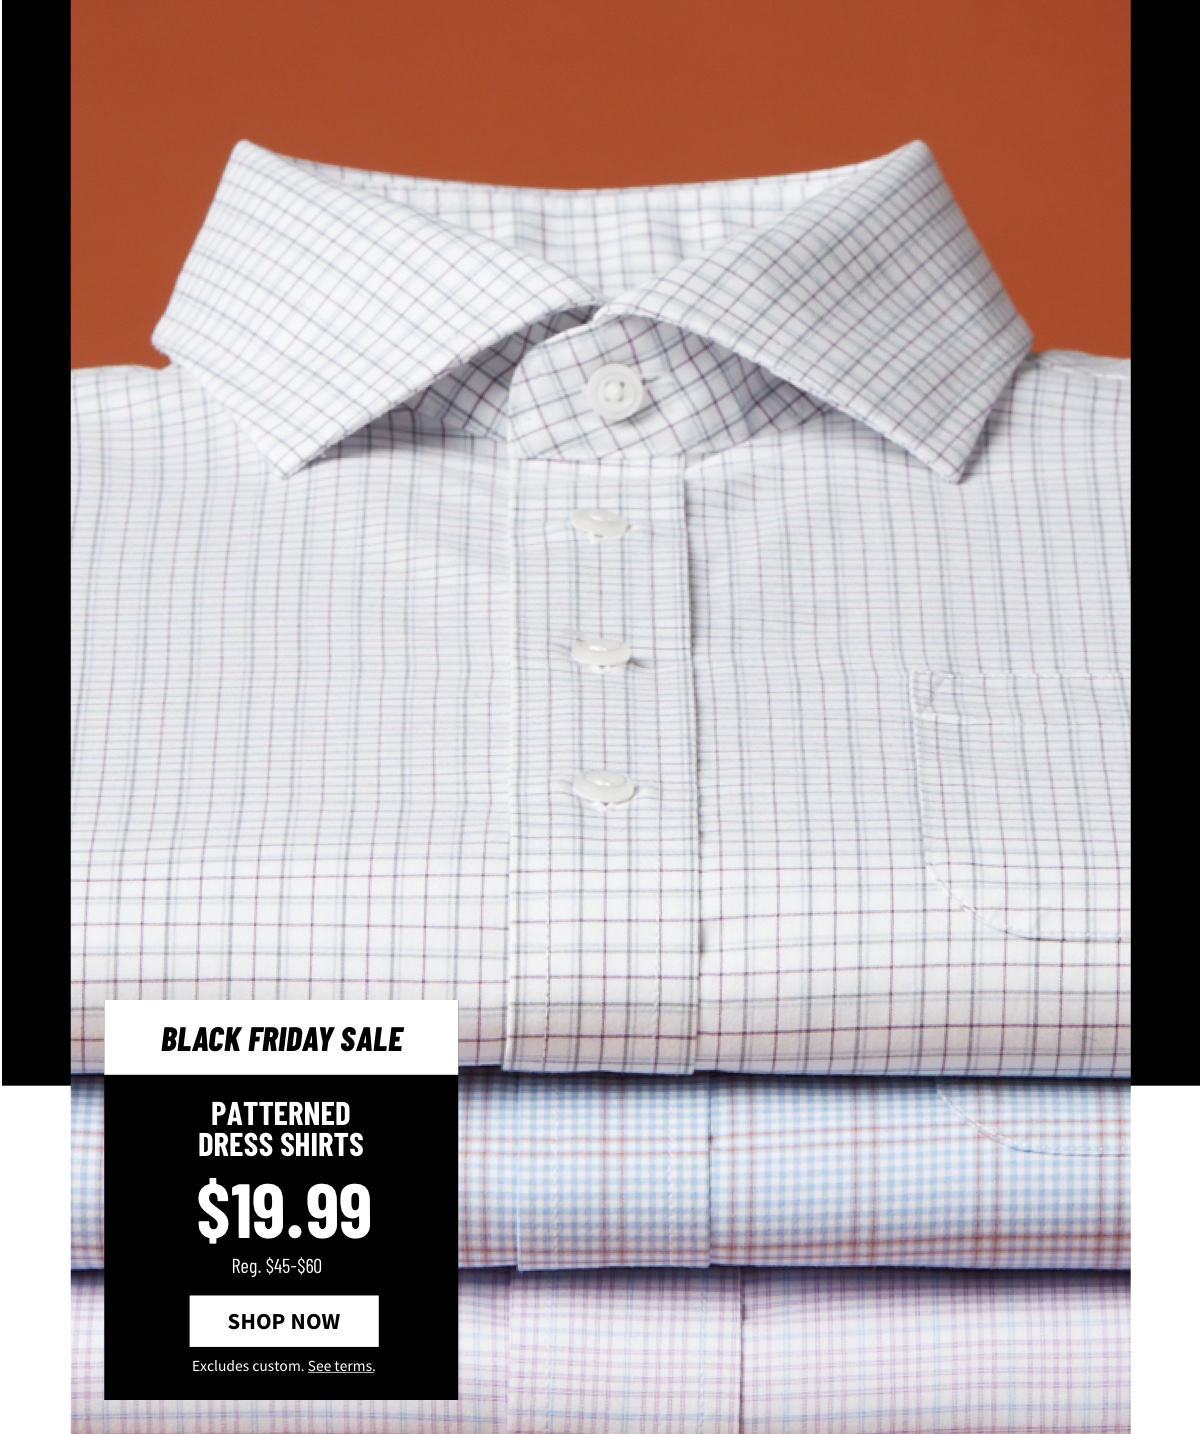 Patterned Dress Shirts $19.99